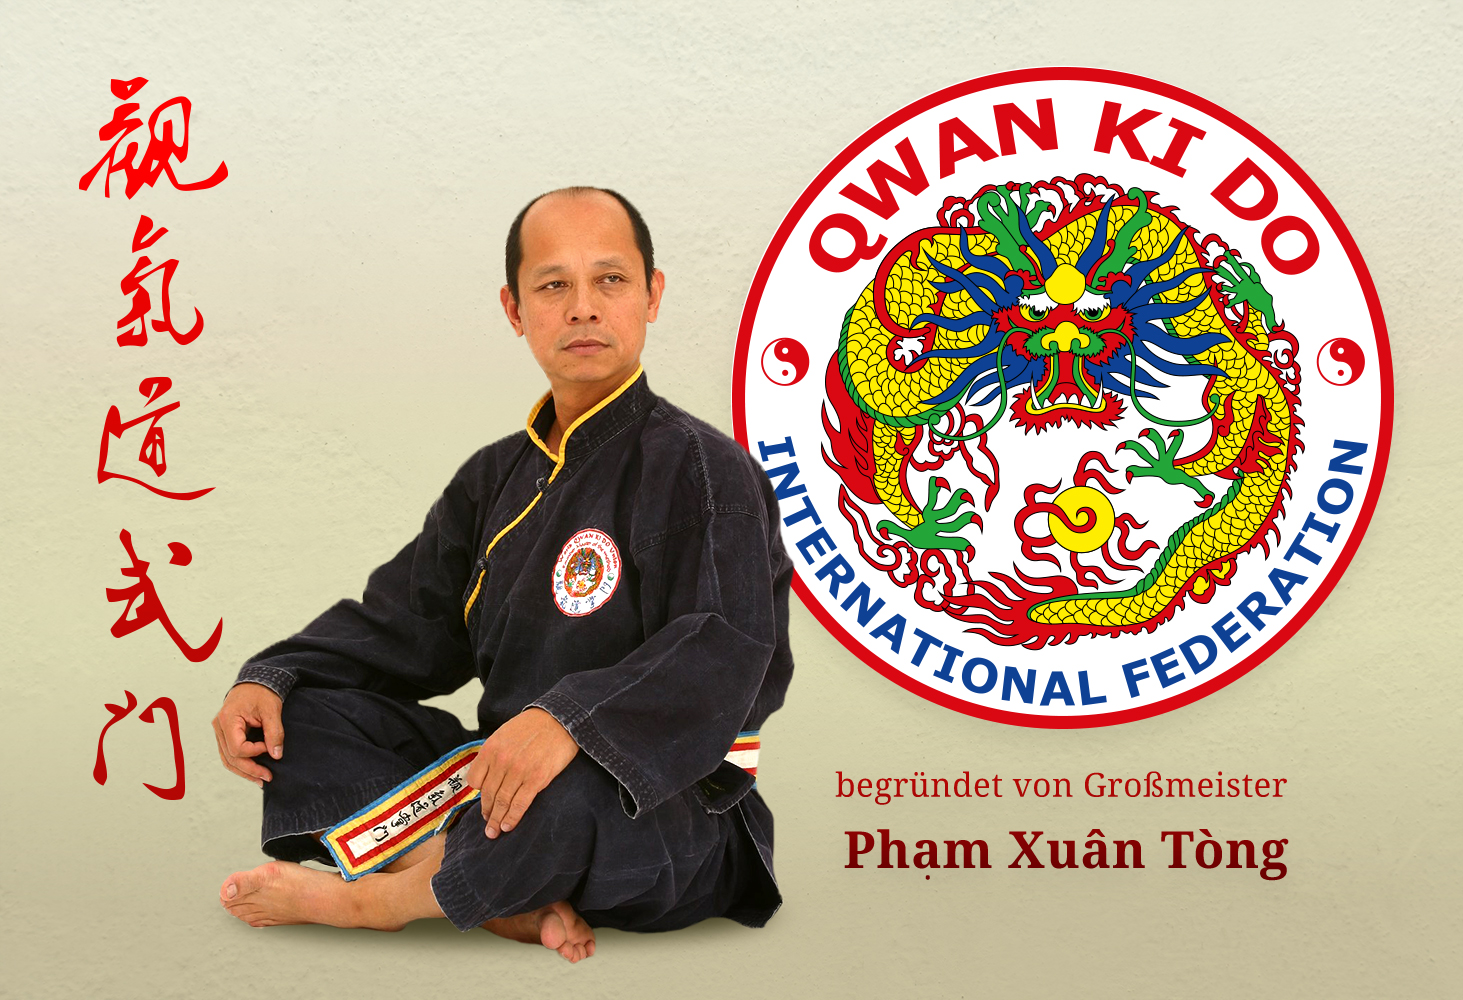 Bild vom Thày Chuong Môn PHAM Xuân Tong und dem Qwan Ki Do Logo